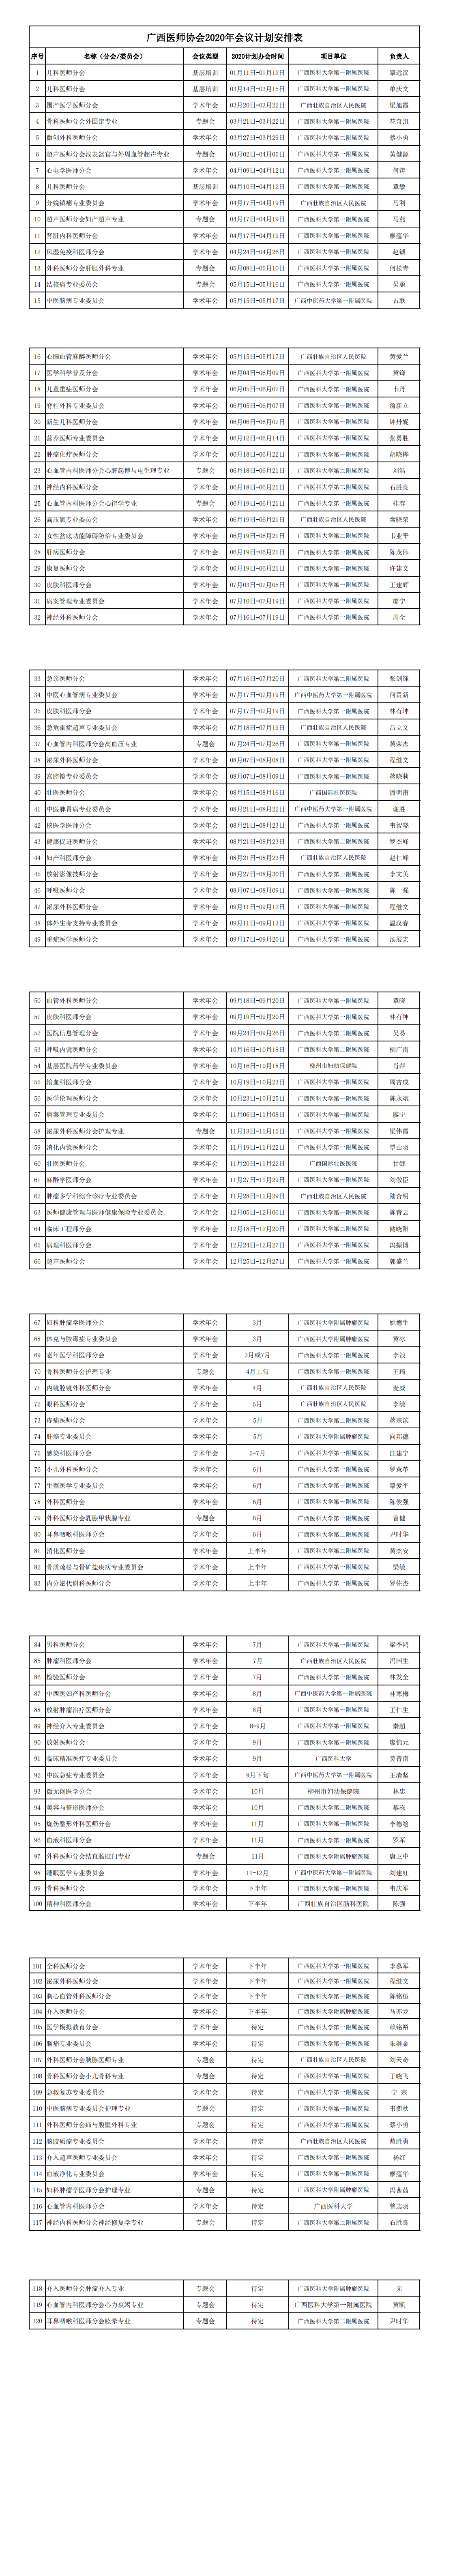 600cc全讯白菜2020年会议计划安排表(1)_00.png